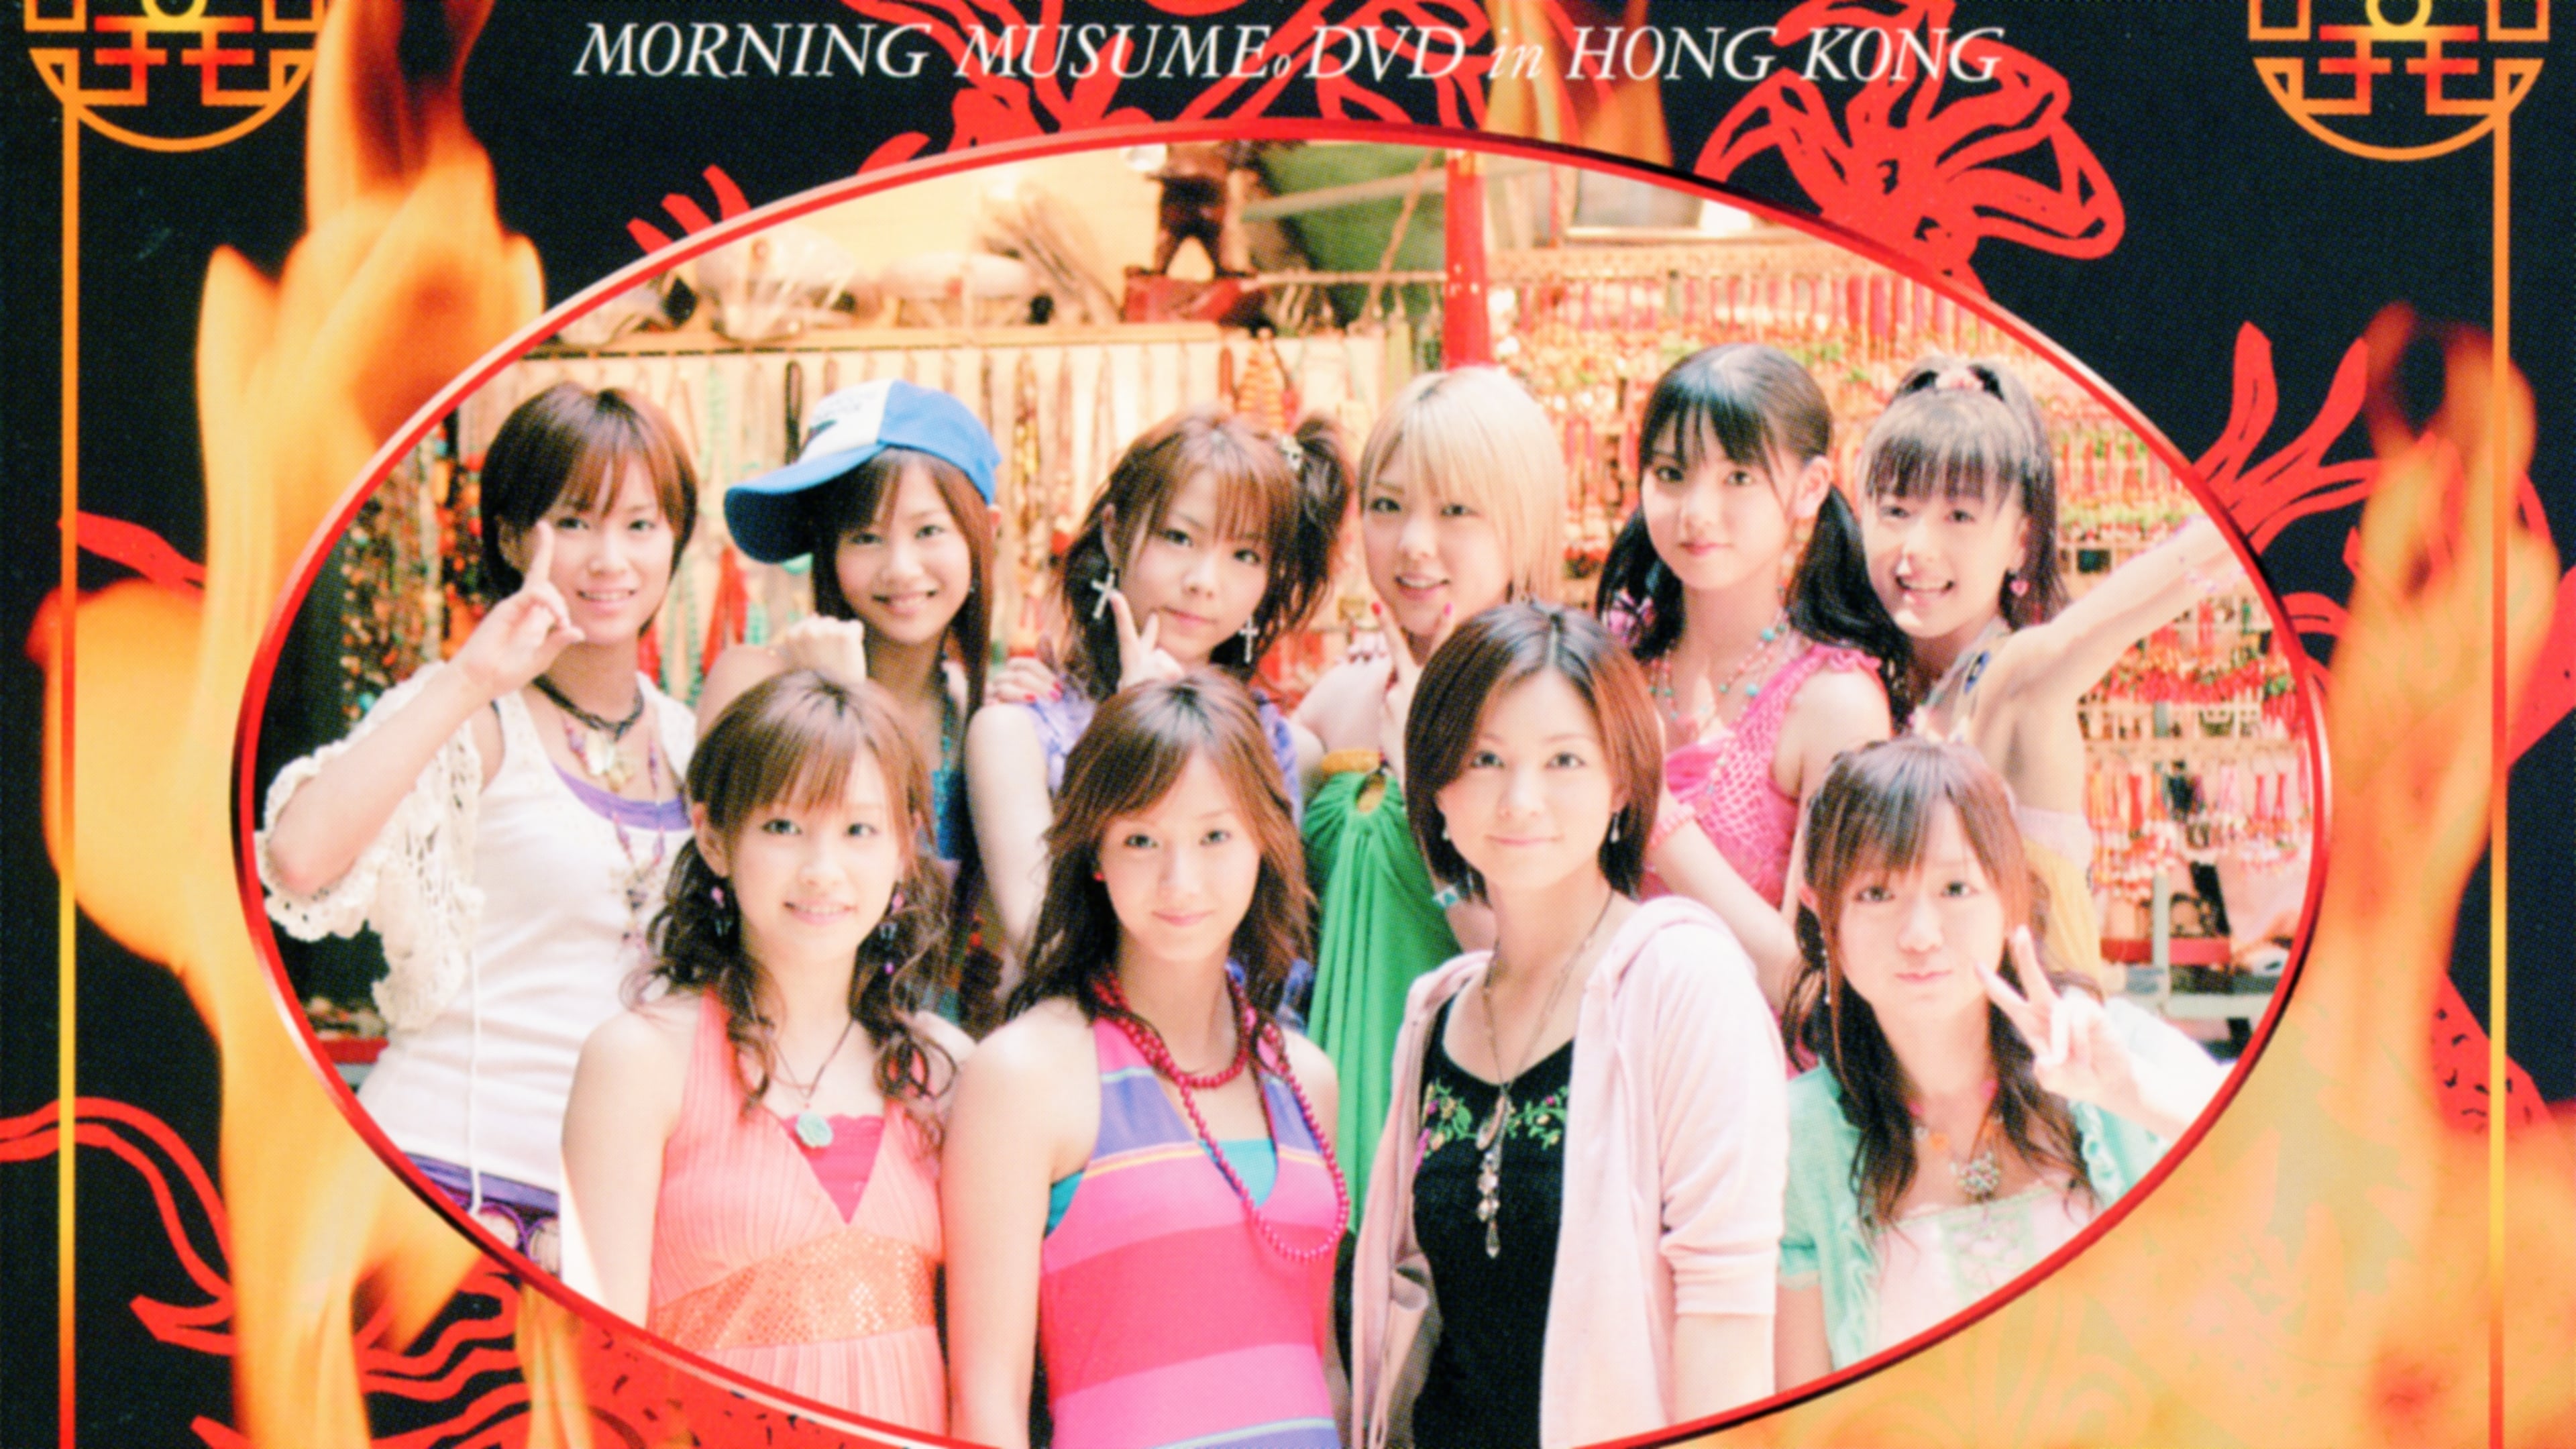 Morning Musume. DVD in Hong Kong